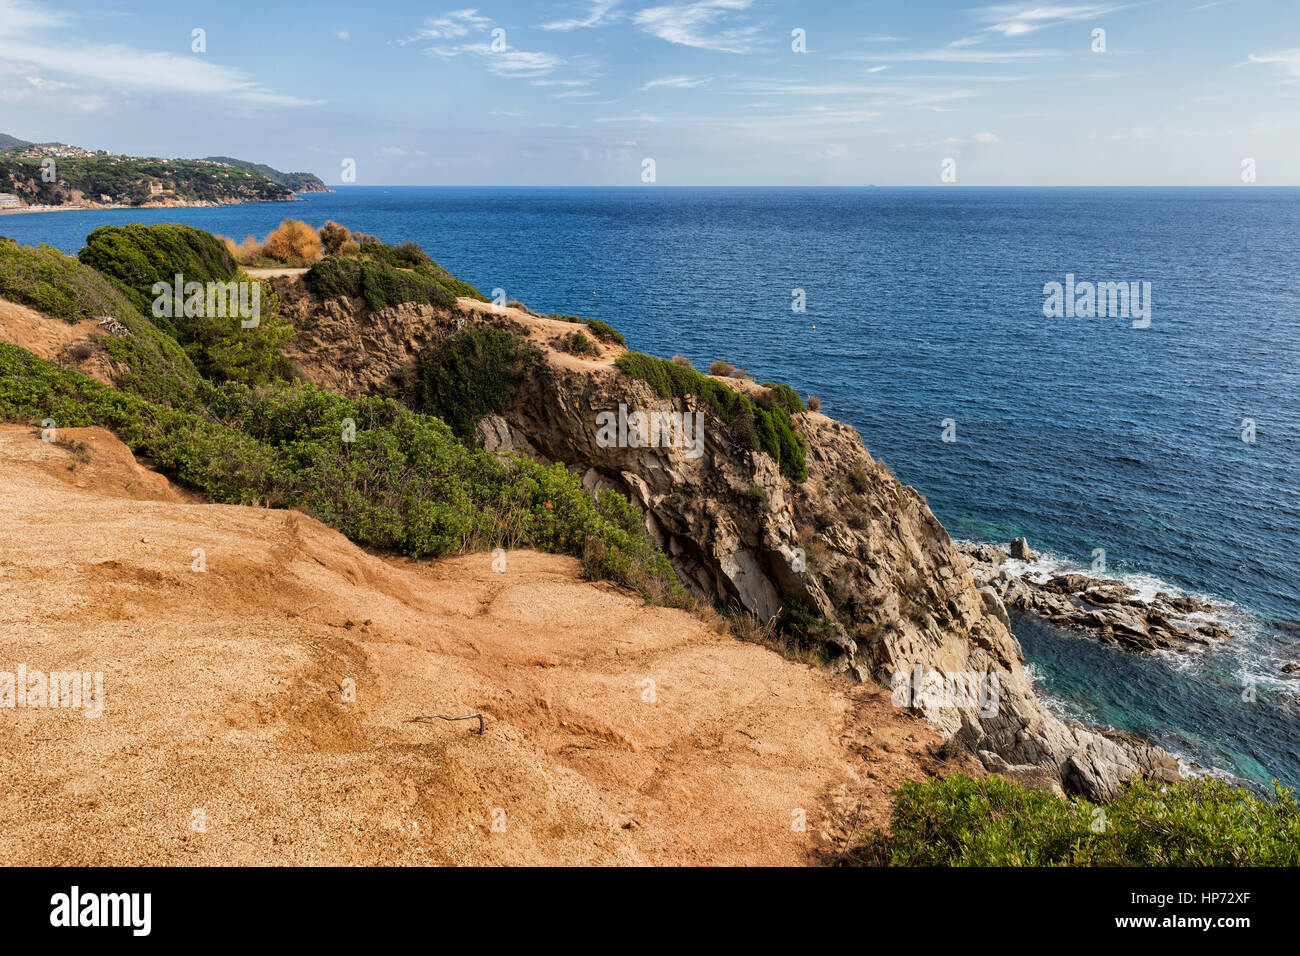 Spagna, Lloret de Mar, Costa Brava, Mare Mediterraneo costa, in cima alla scogliera terrazza viewpoint Foto Stock